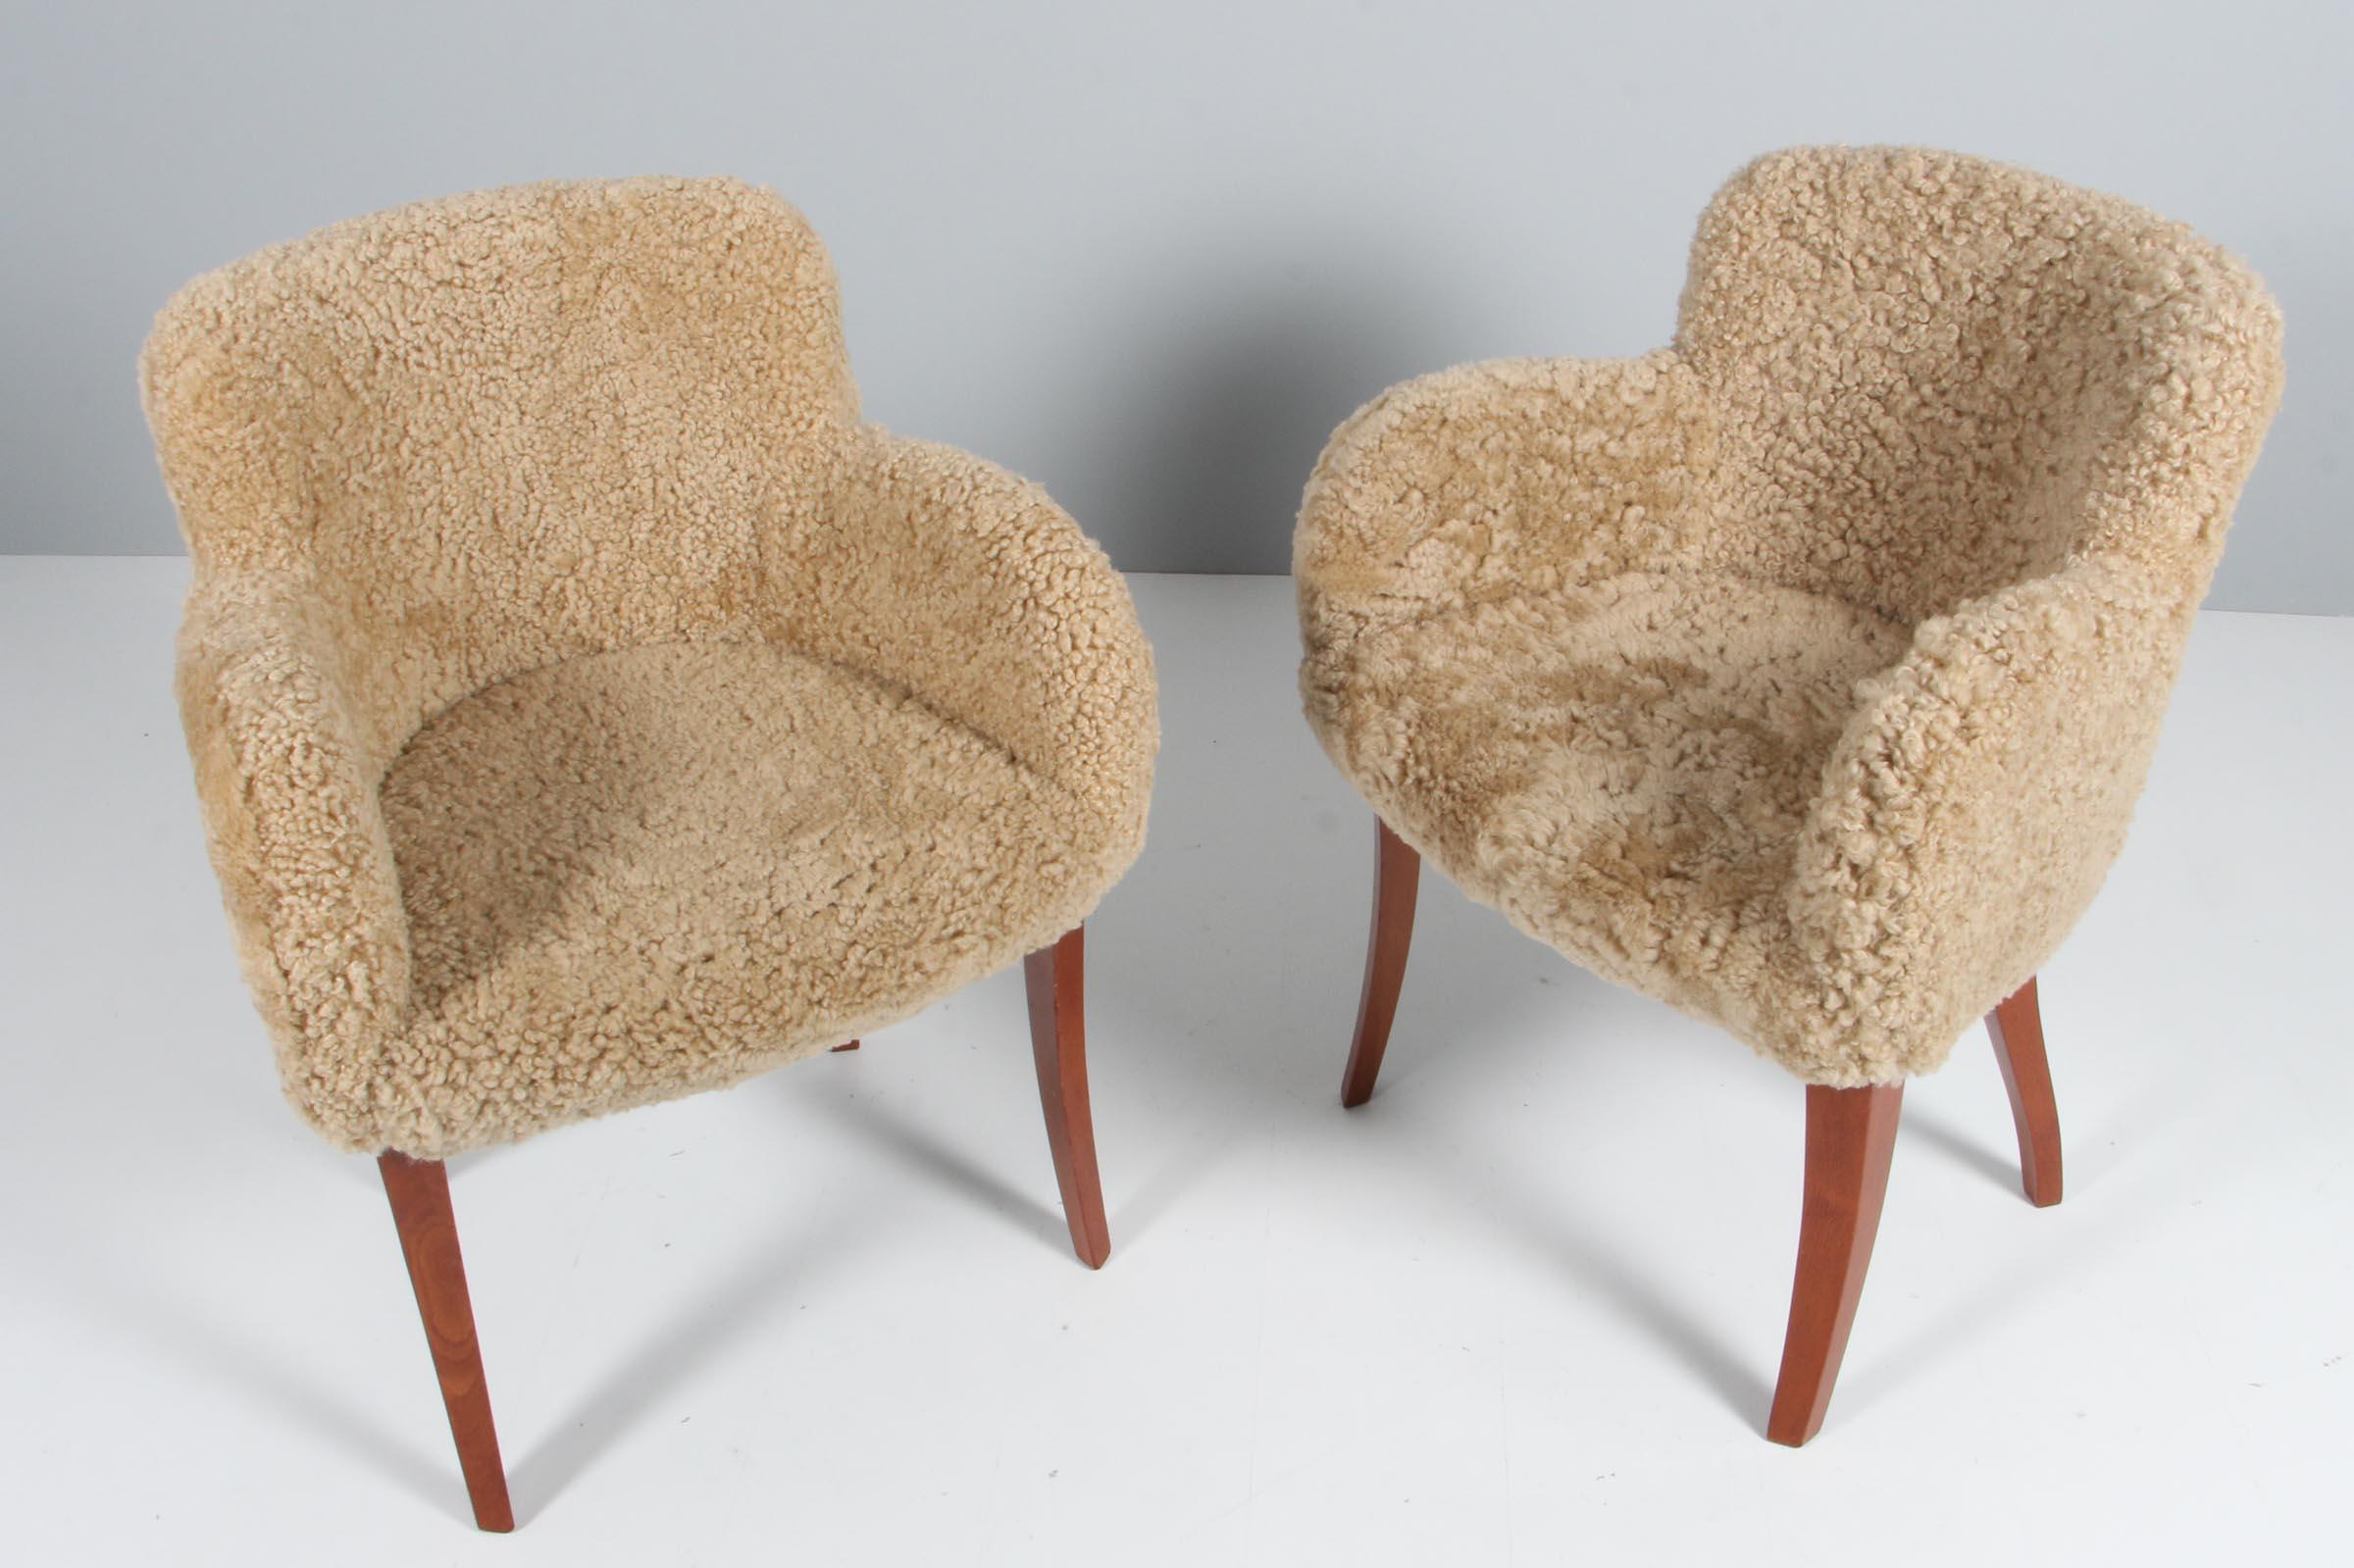 Paire de chaises des années 1940 nouvellement tapissées de peau d'agneau.

Pieds galbés en acajou massif.